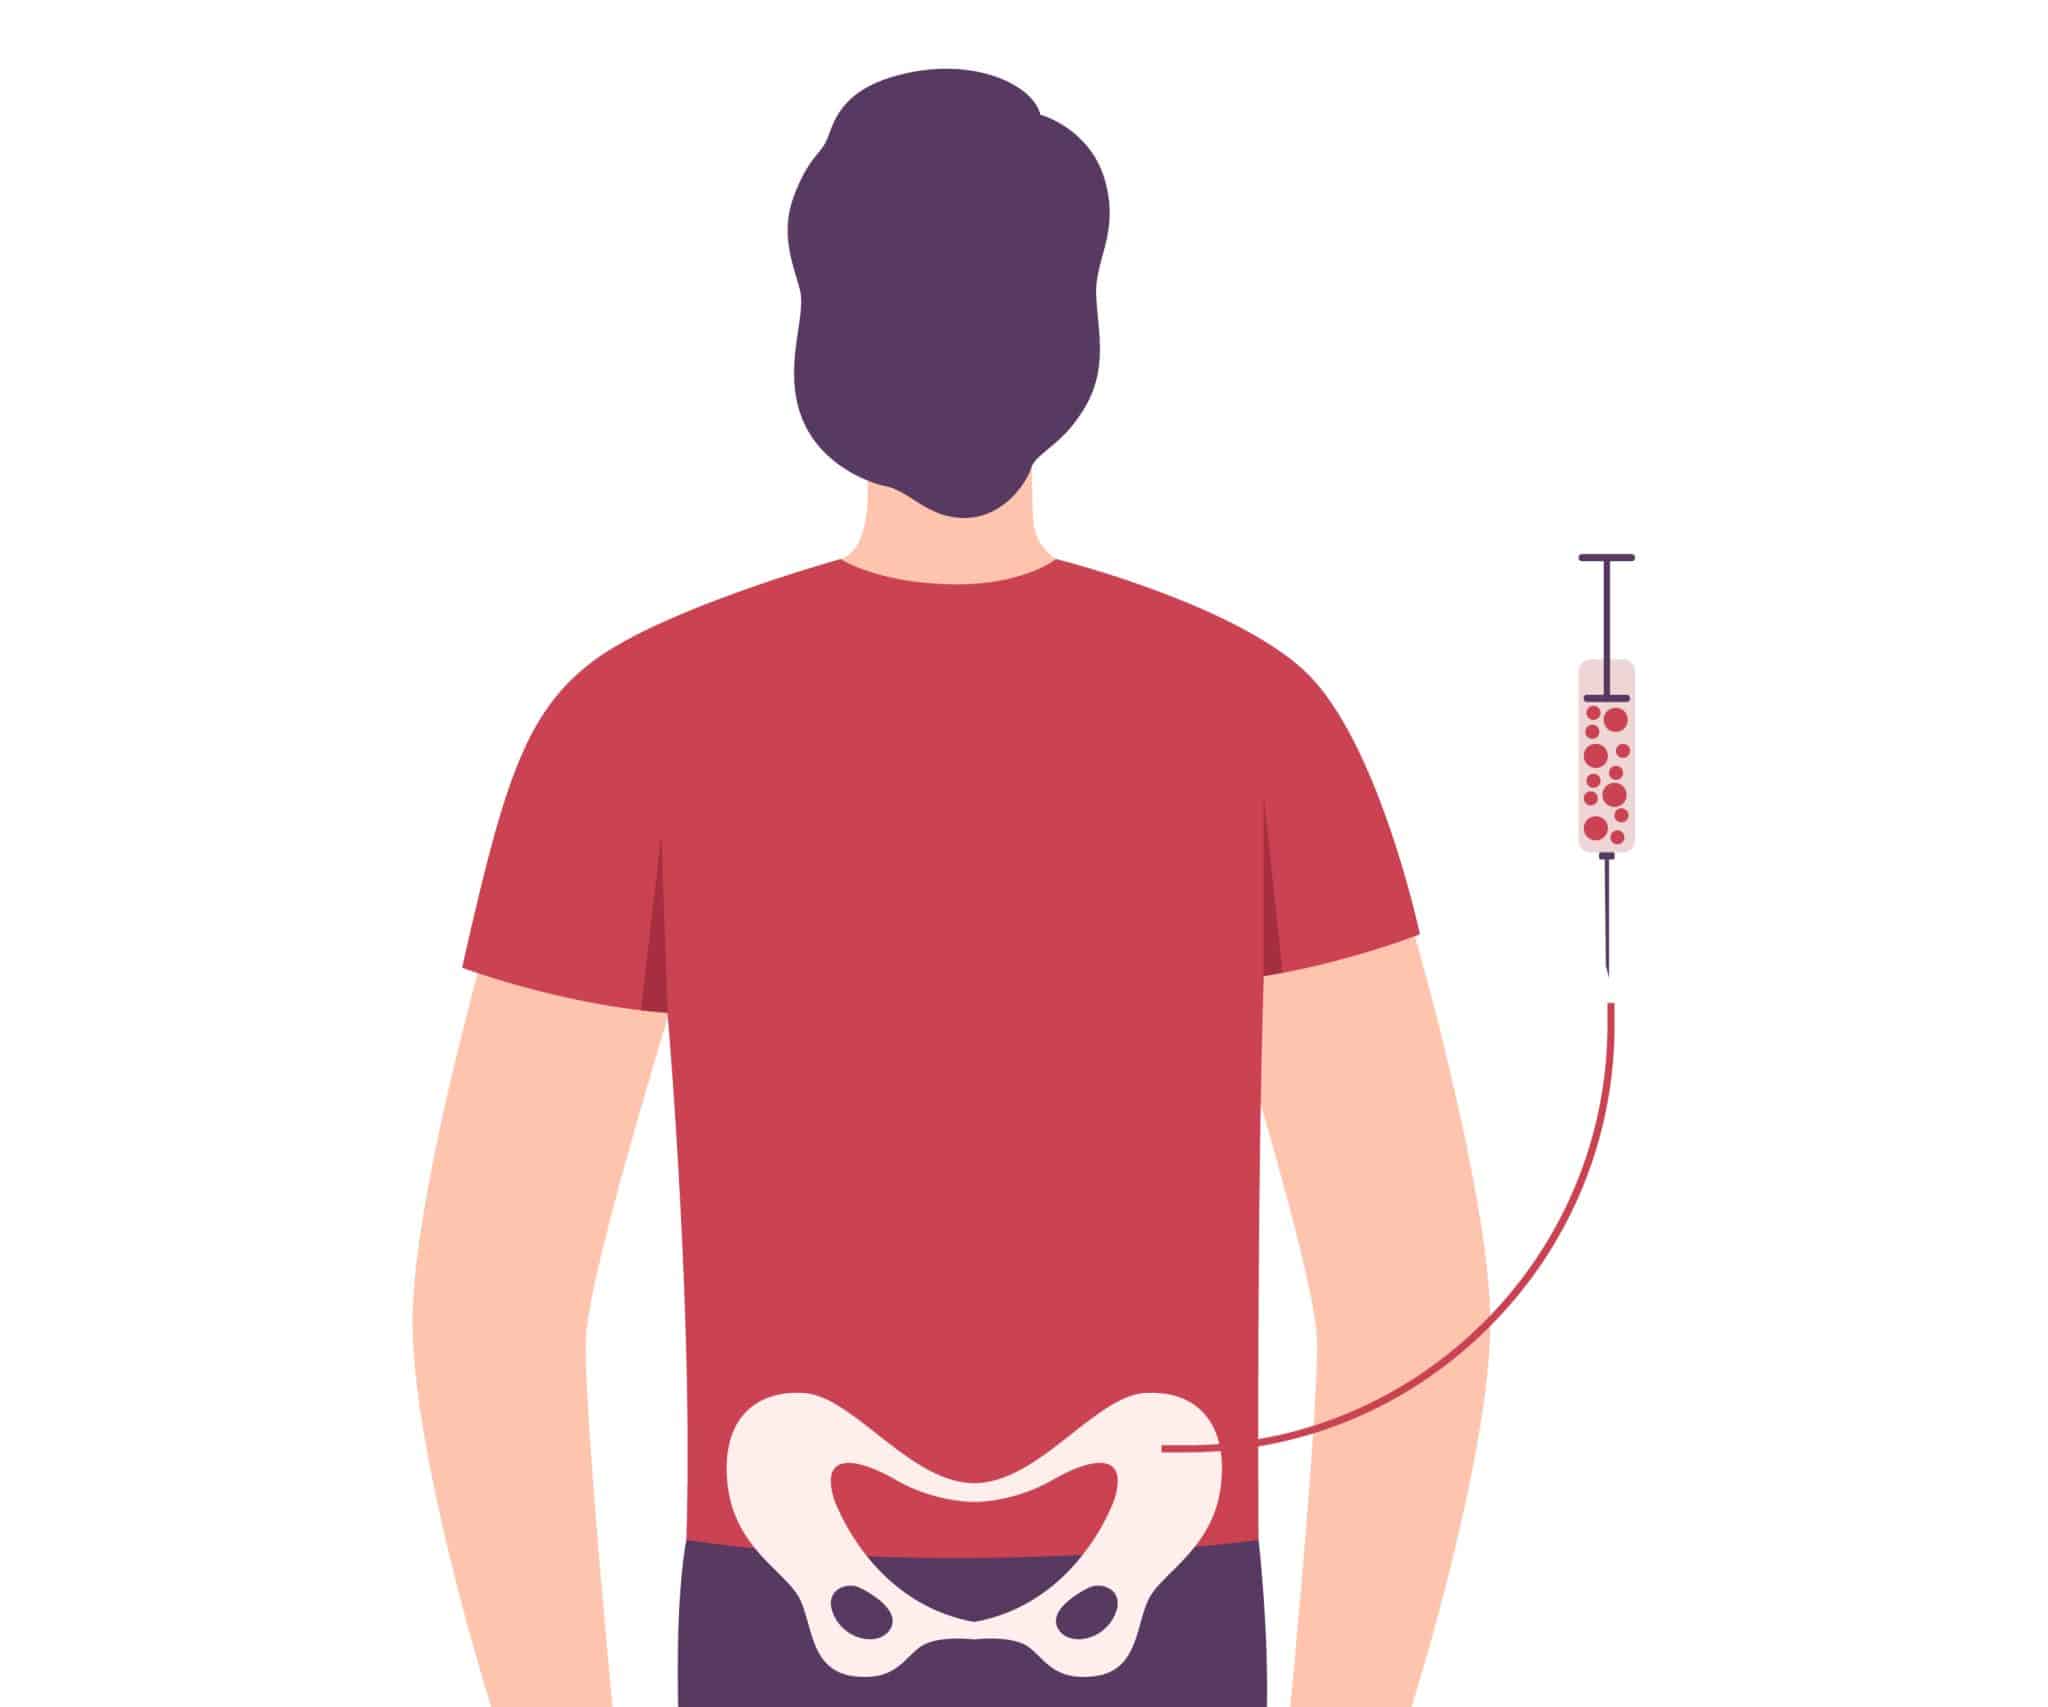 immagine illustrata con donatore di midollo osseo a cui viene prelevato il midollo